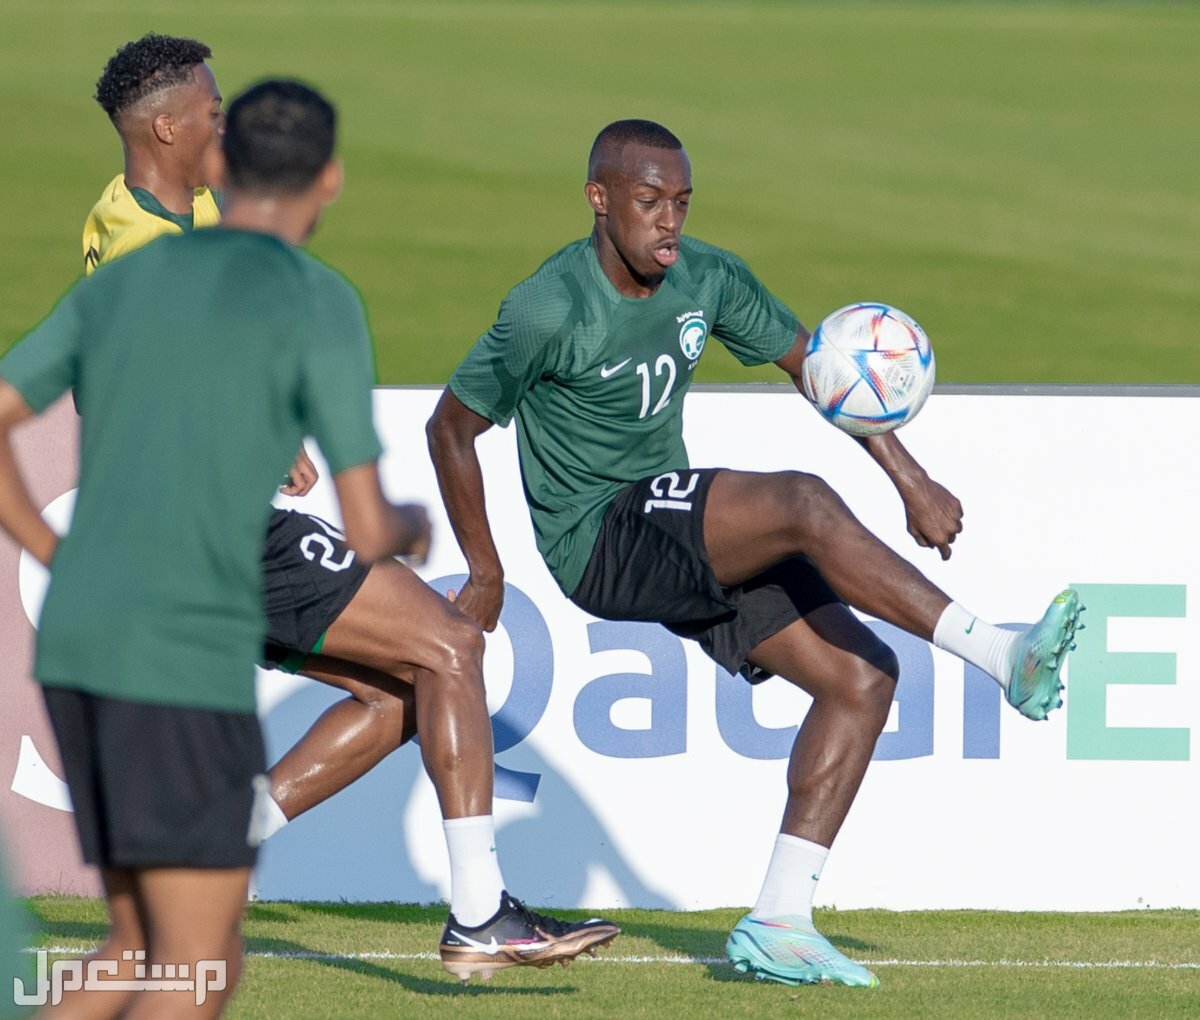 السعودية وبولندا مشاهدة مجانية لمباريات كاس العالم 2022 في العراق المنتخب السعودي